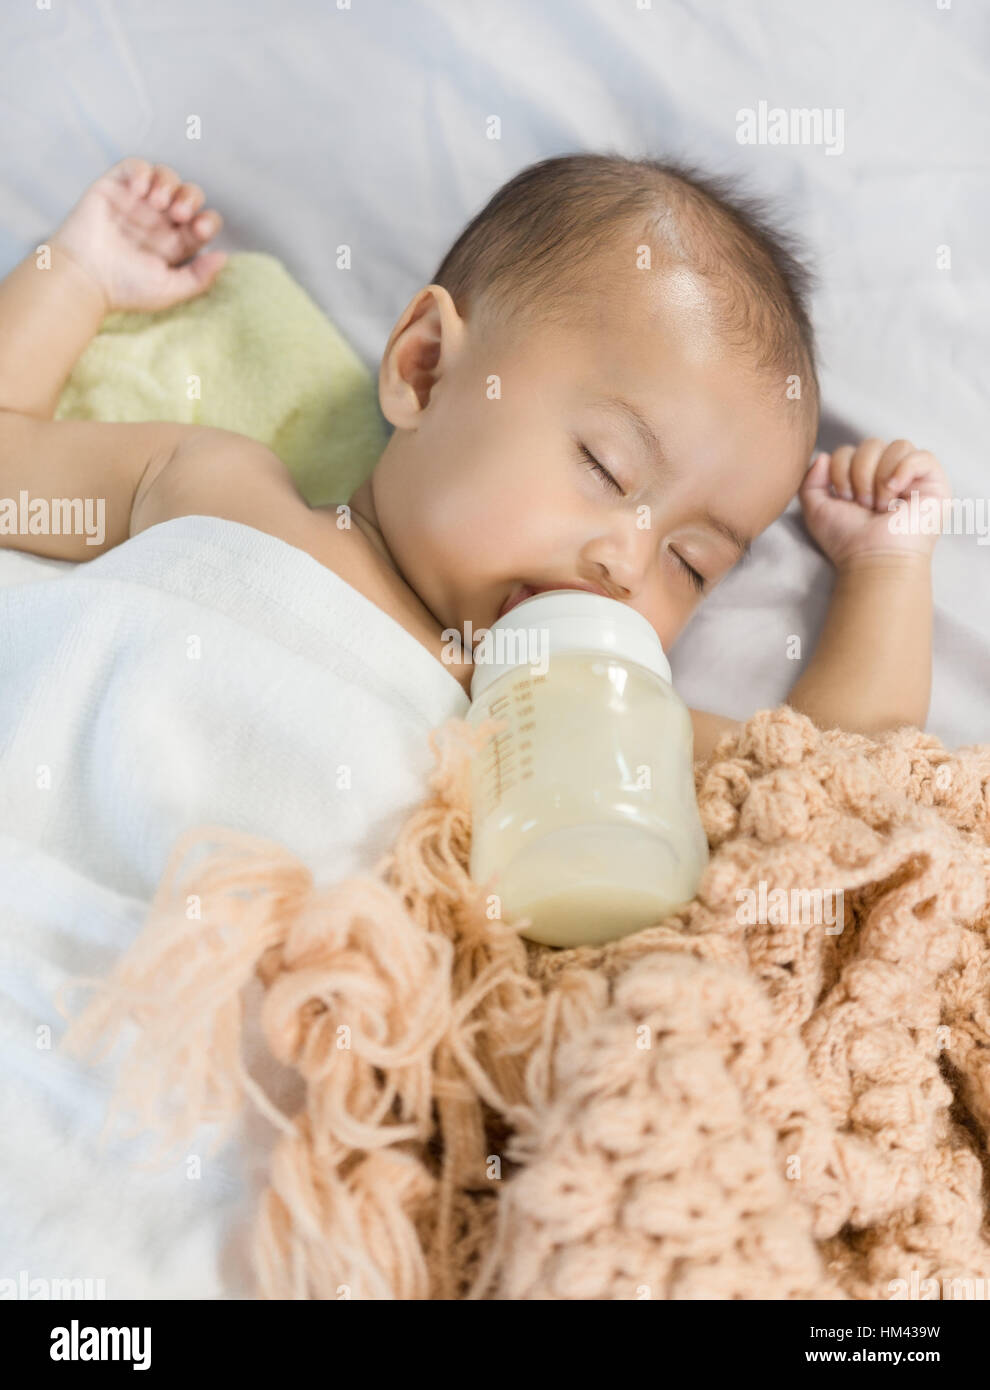 Asiatisches Baby schlafen und trinken Milch aus der Flasche Stockfotografie  - Alamy